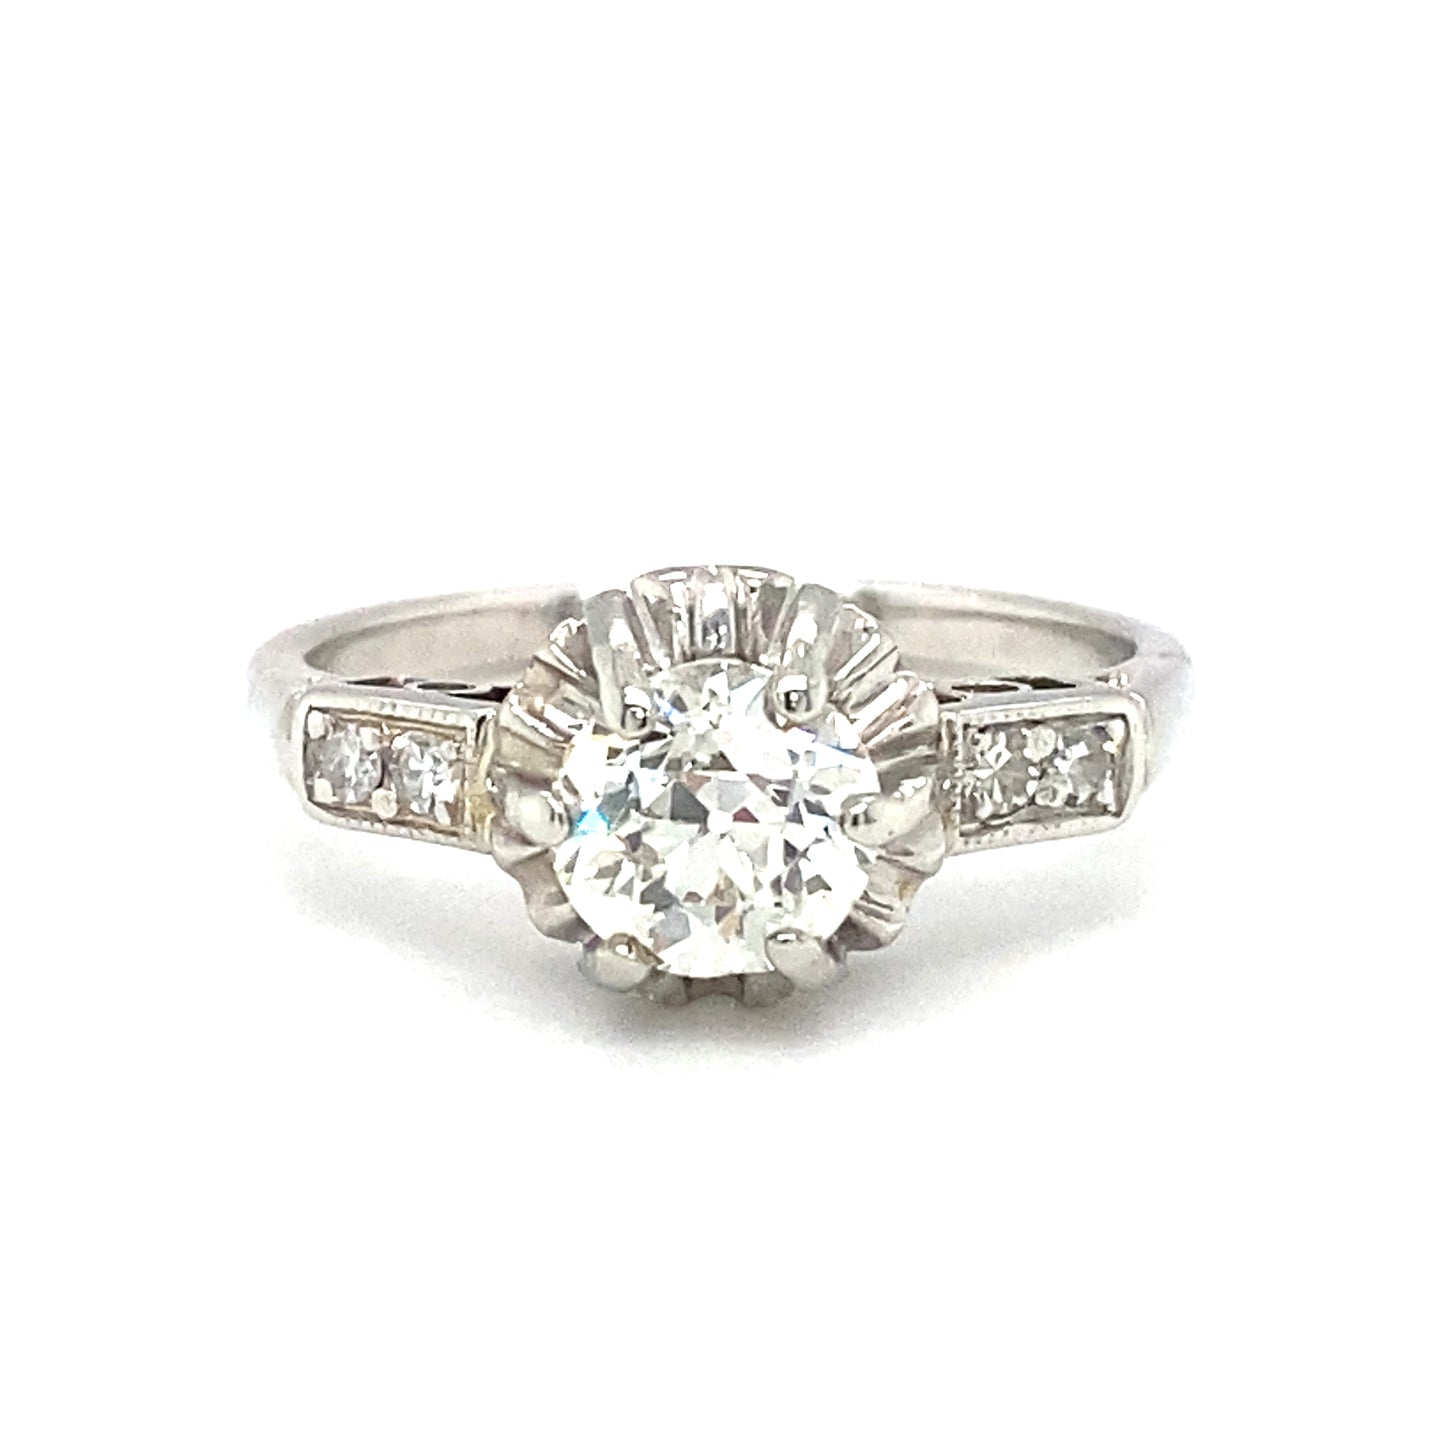 Circa 1920s Art Deco European Cut Diamond Engagement Ring in Platinum